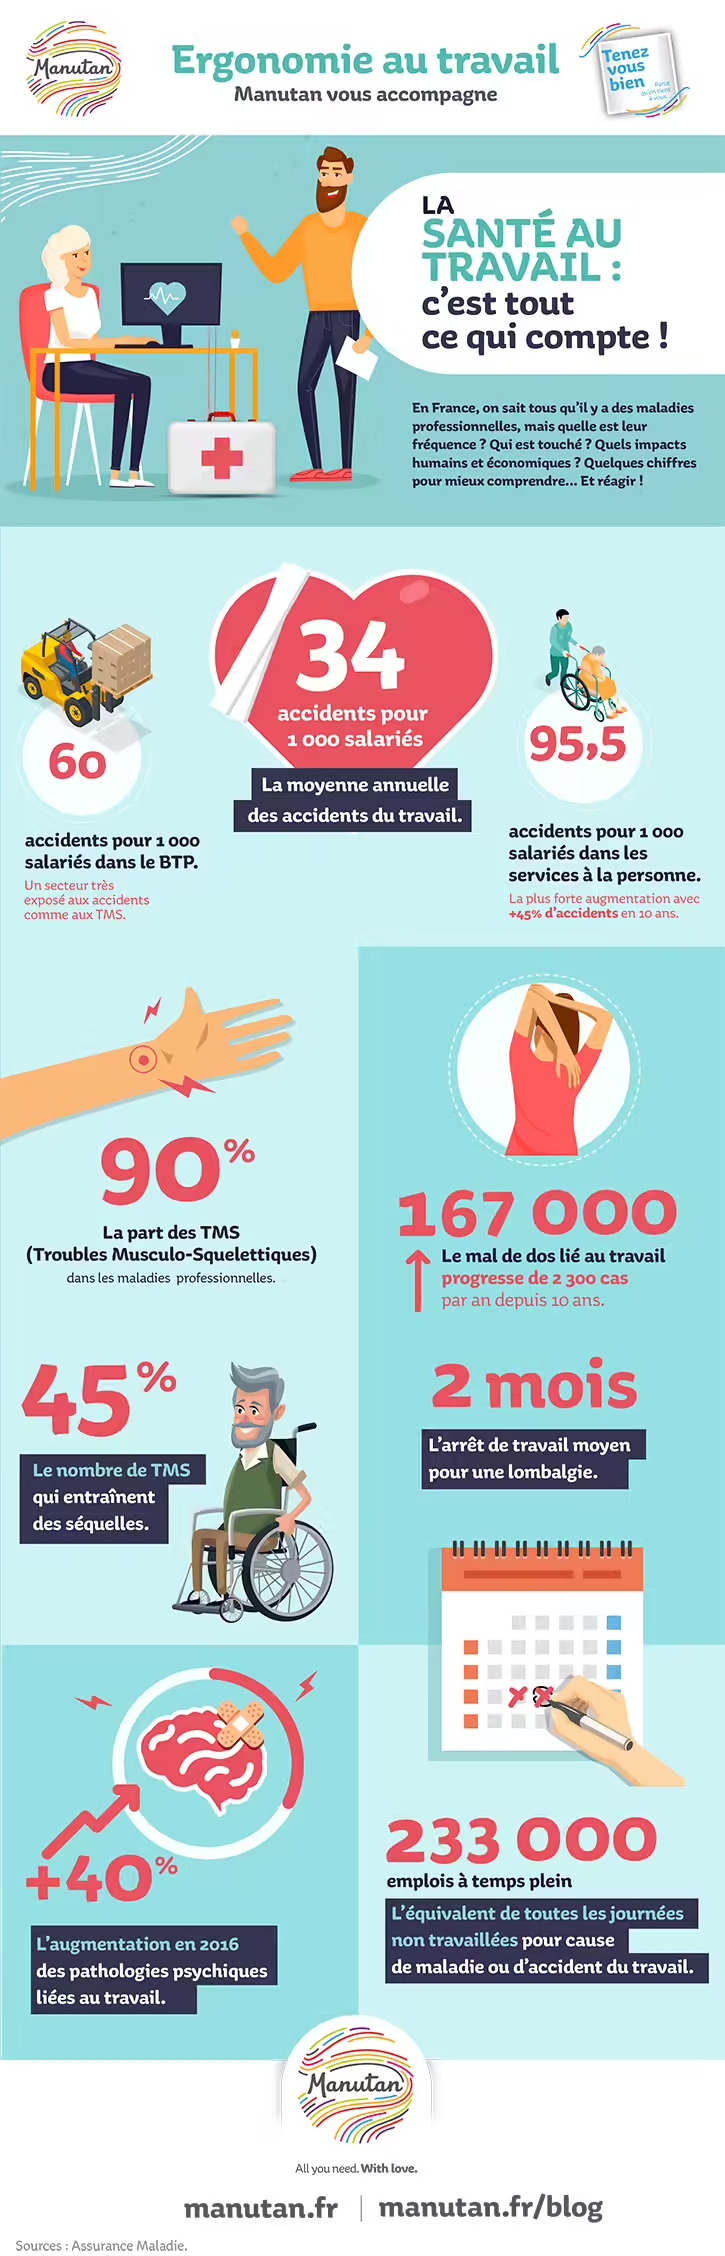 Conditions de travail en France : un état des lieux inquiétant